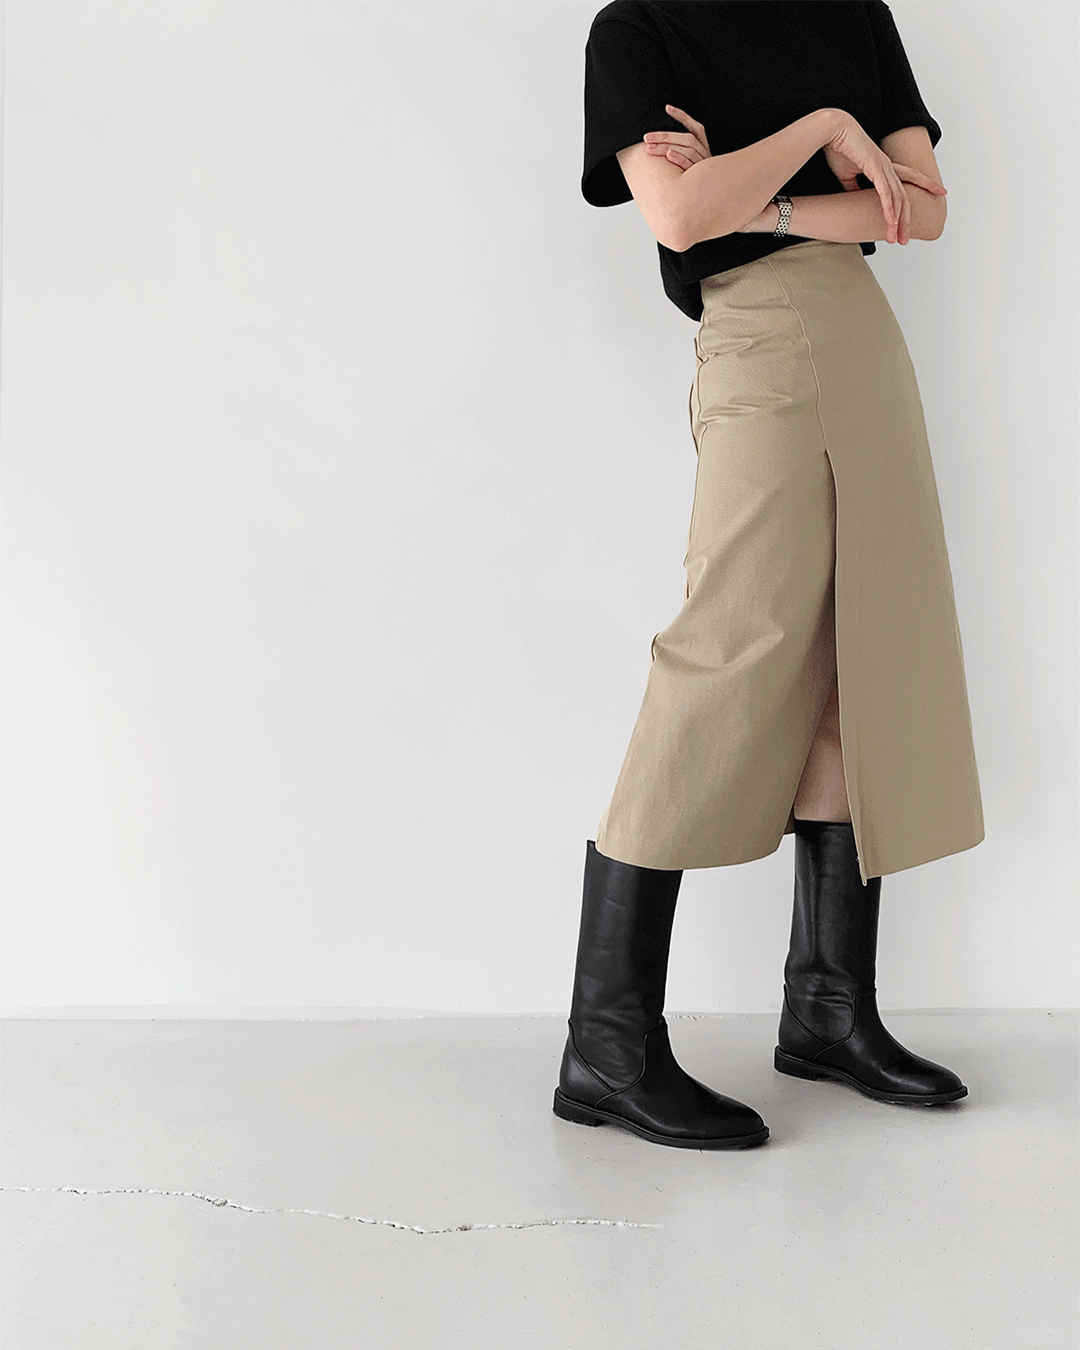 Cover skirt